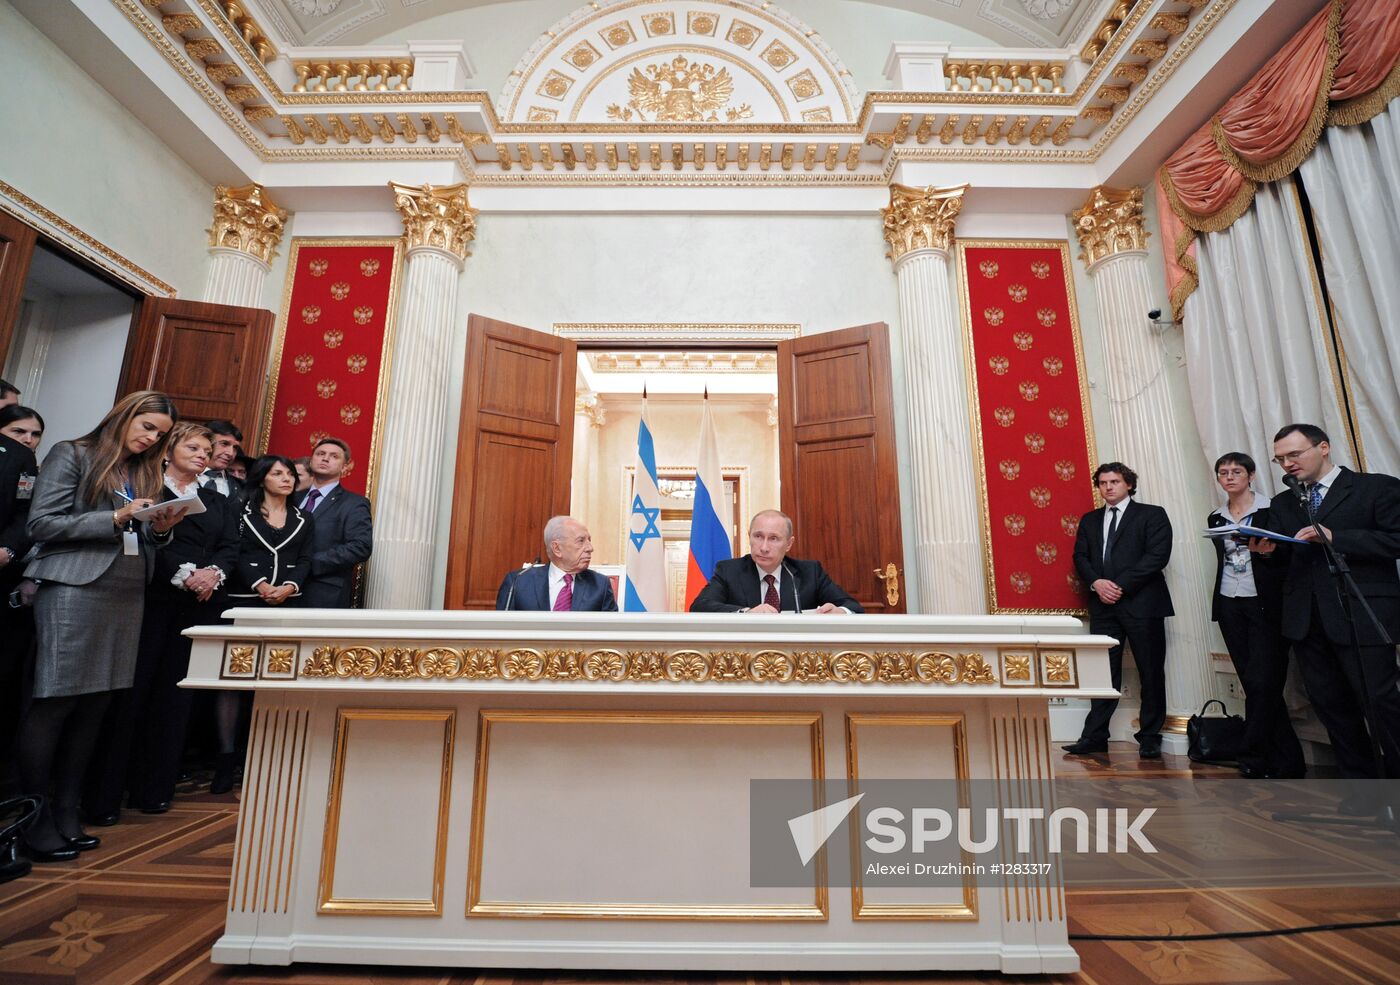 Vladimir Putin's meeting with Shimon Peres in Kremlin